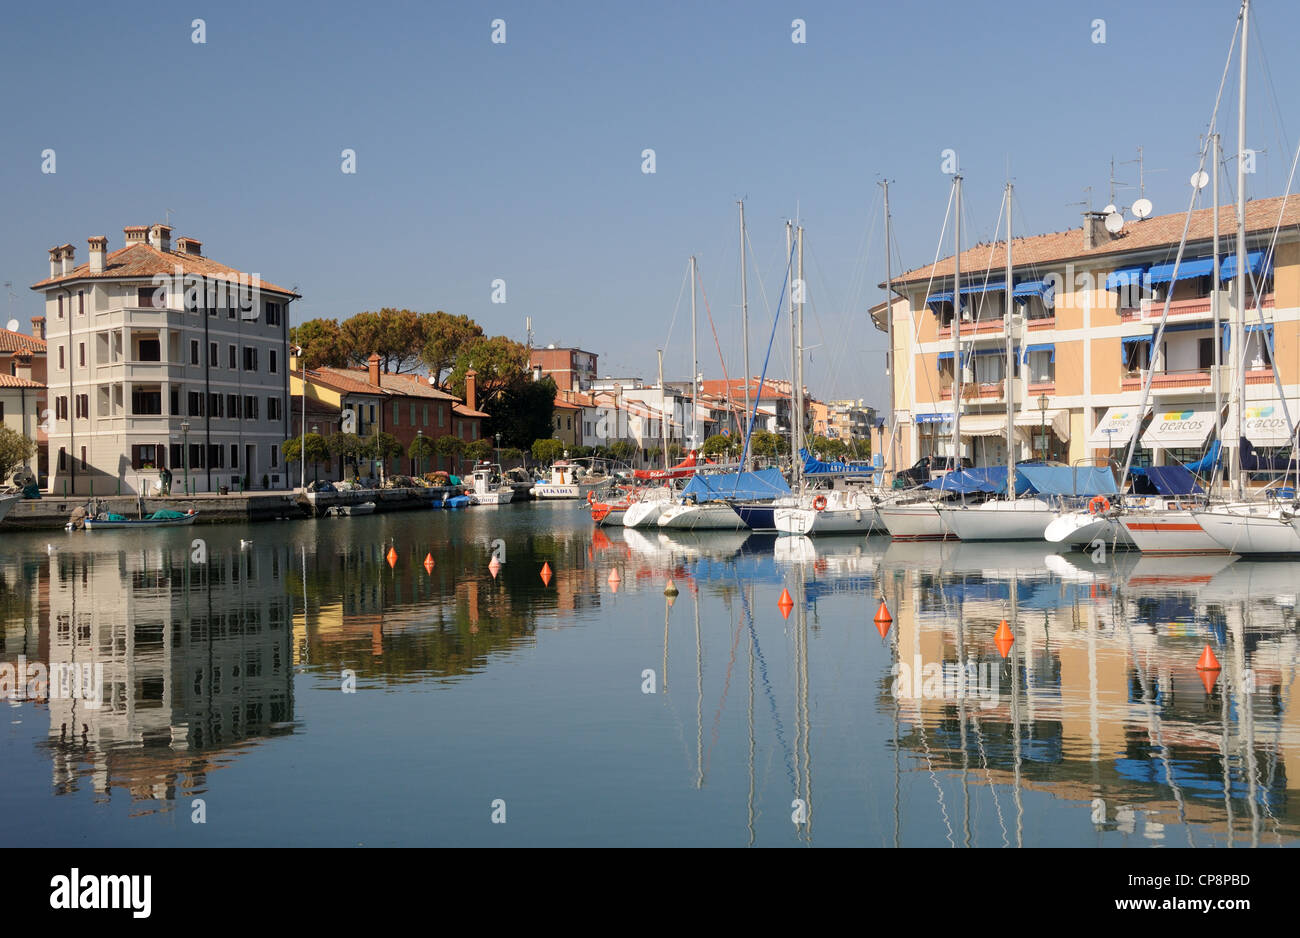 The harbour in Grado, Friuli-Venezia Giulia, Italy Stock Photo